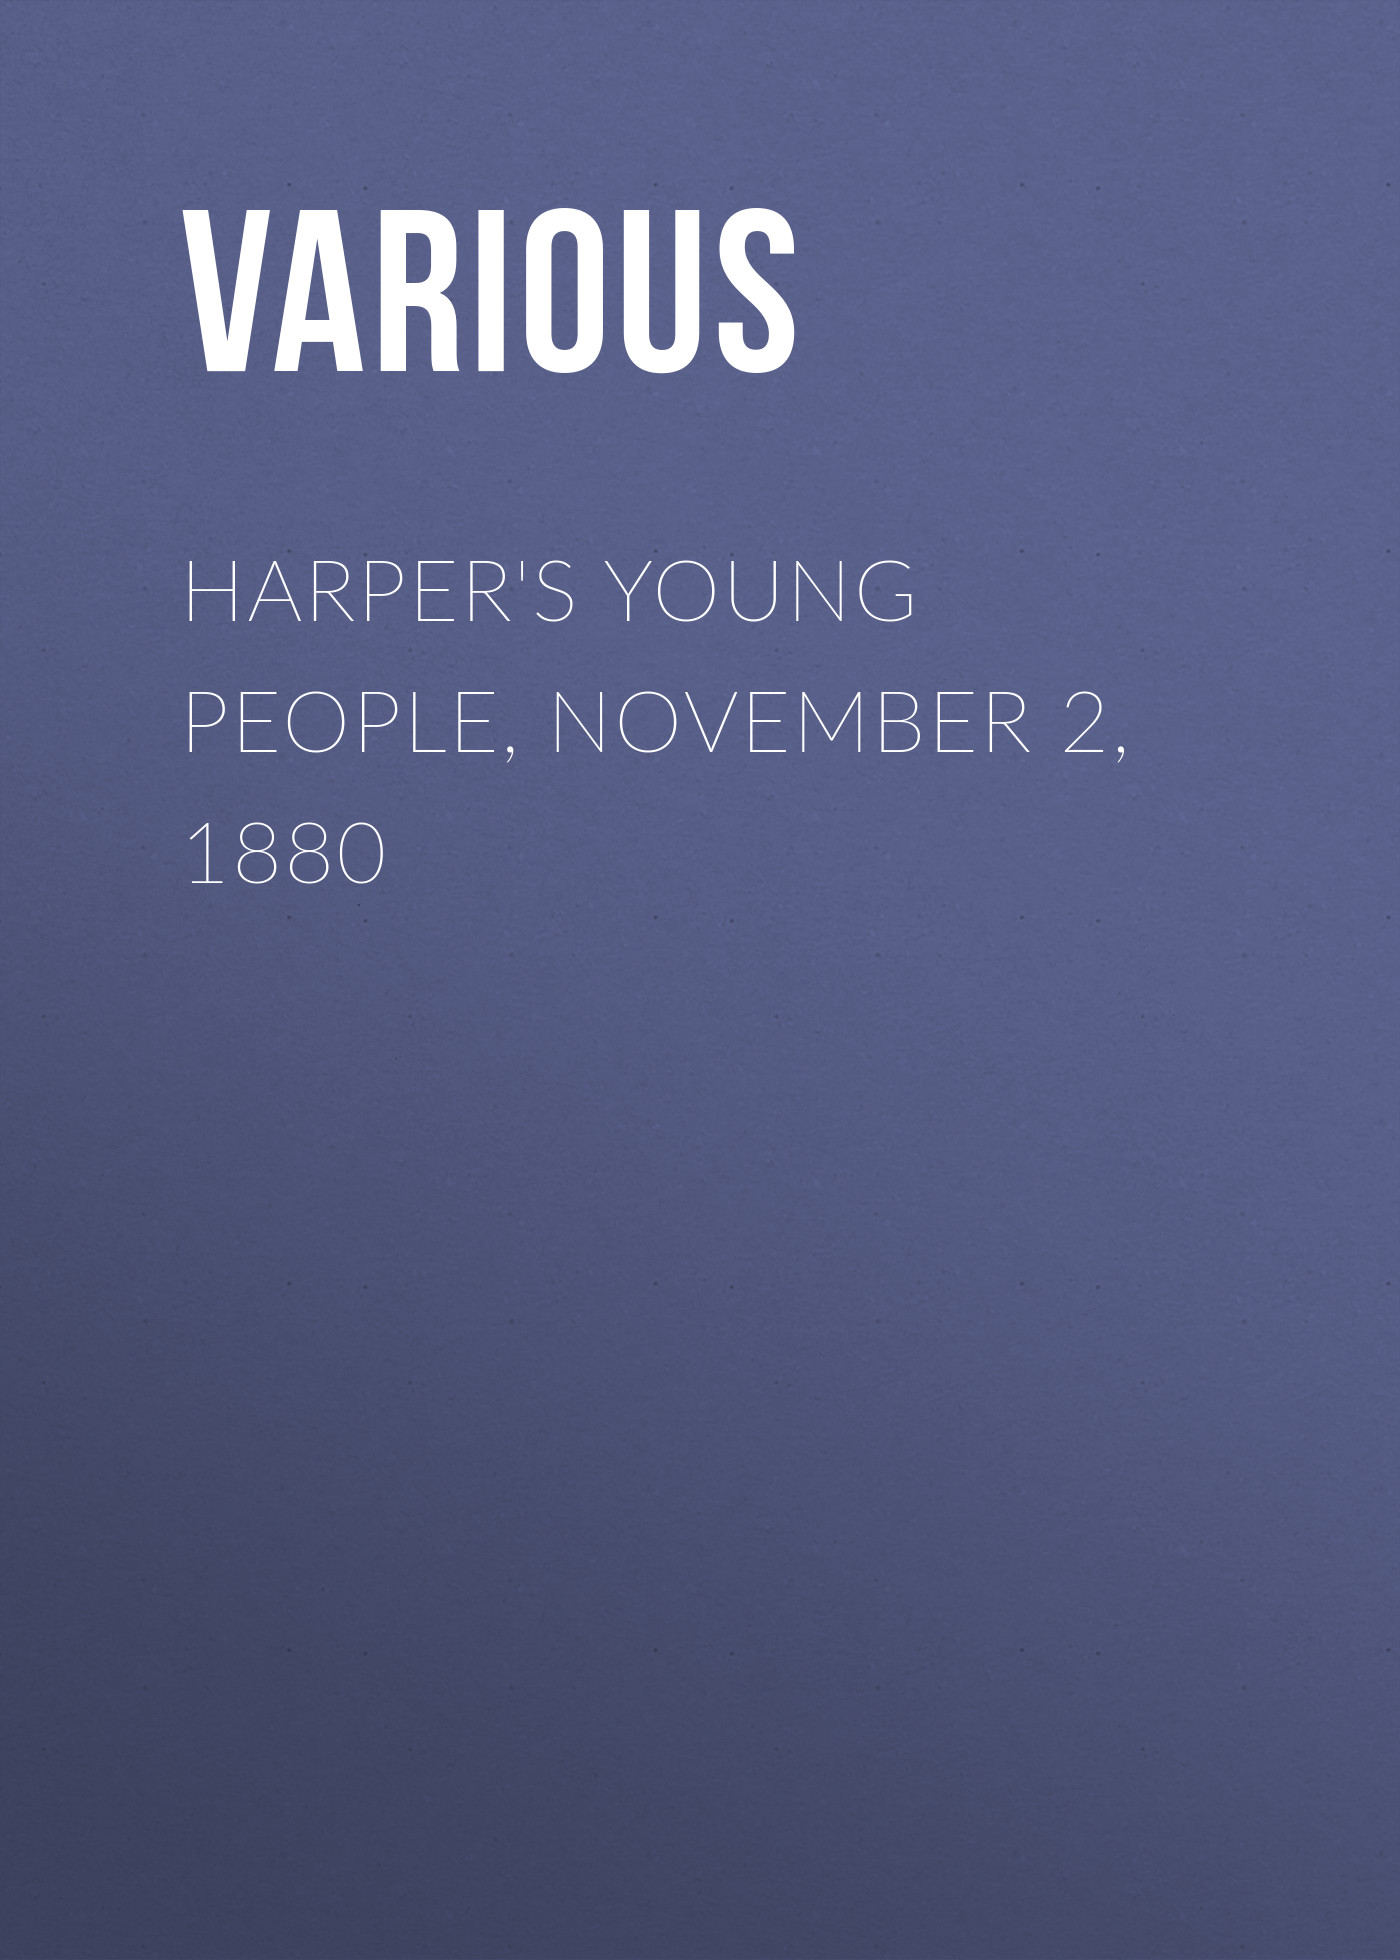 Книга Harper's Young People, November 2, 1880 из серии , созданная  Various, может относится к жанру Журналы, Зарубежная образовательная литература. Стоимость электронной книги Harper's Young People, November 2, 1880 с идентификатором 25716856 составляет 0 руб.